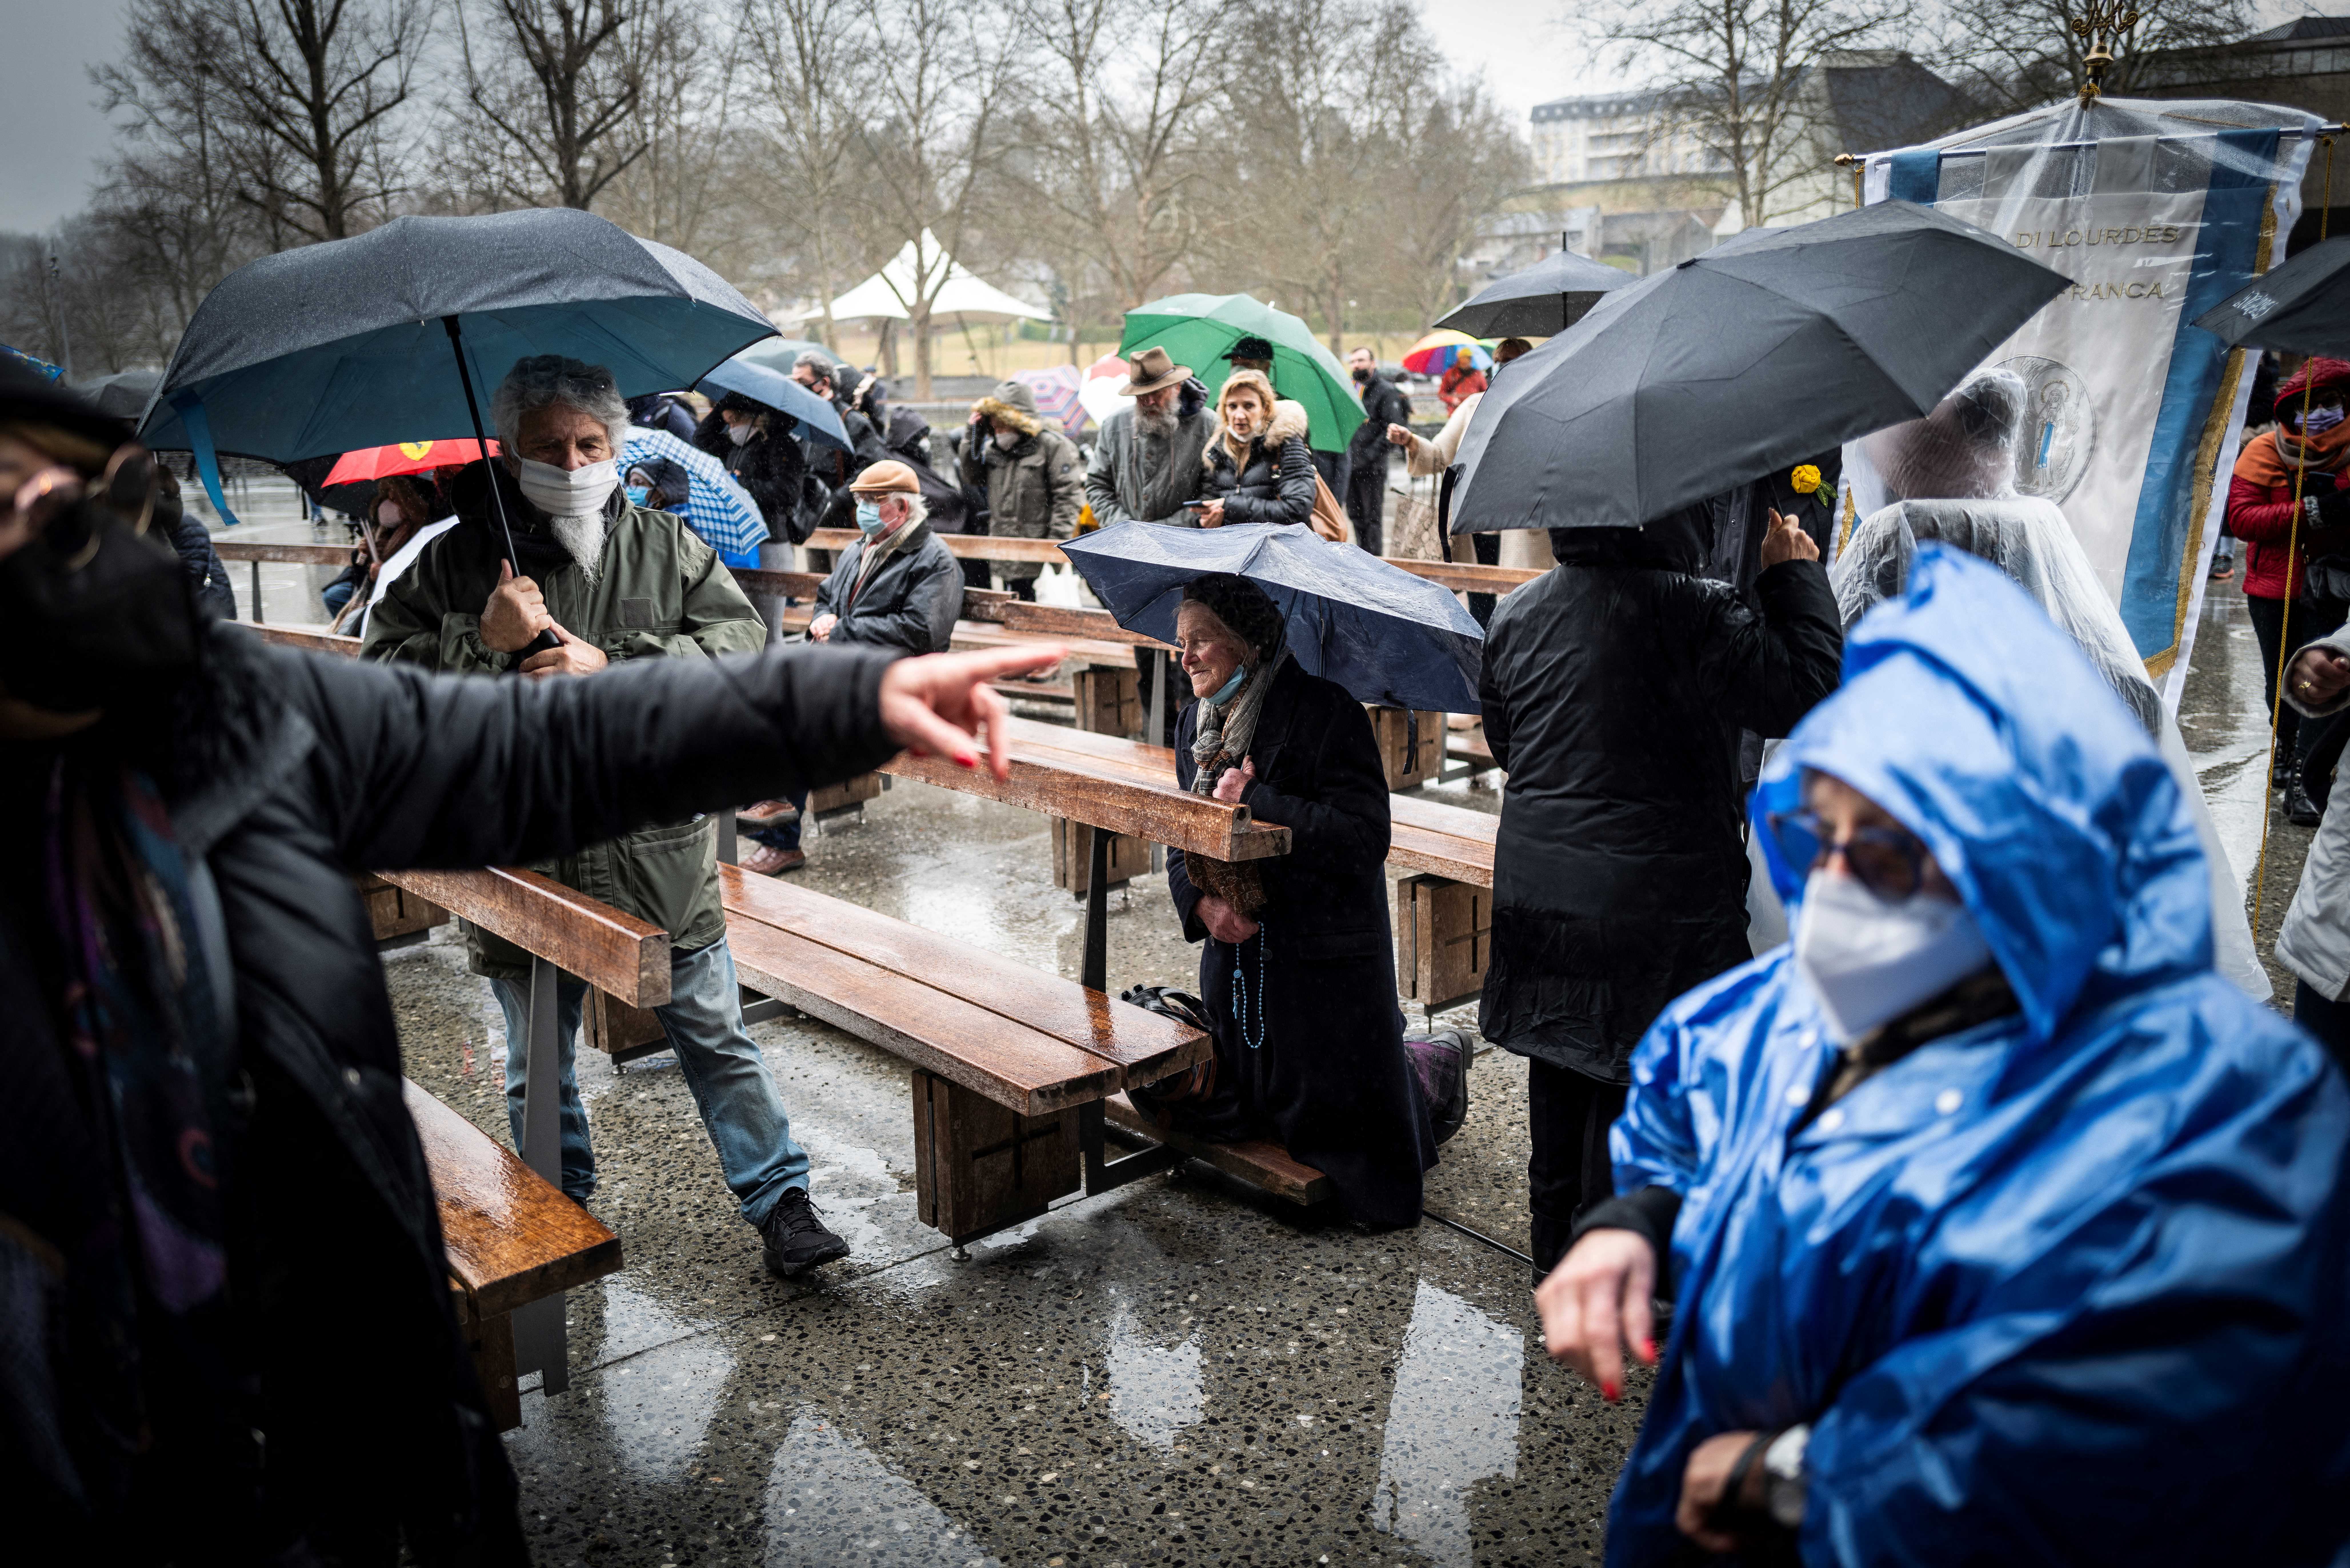 Miles de fieles acuden al santuario de Lourdes en Francia, abierto por primera vez desde la pandemia (Fotos)